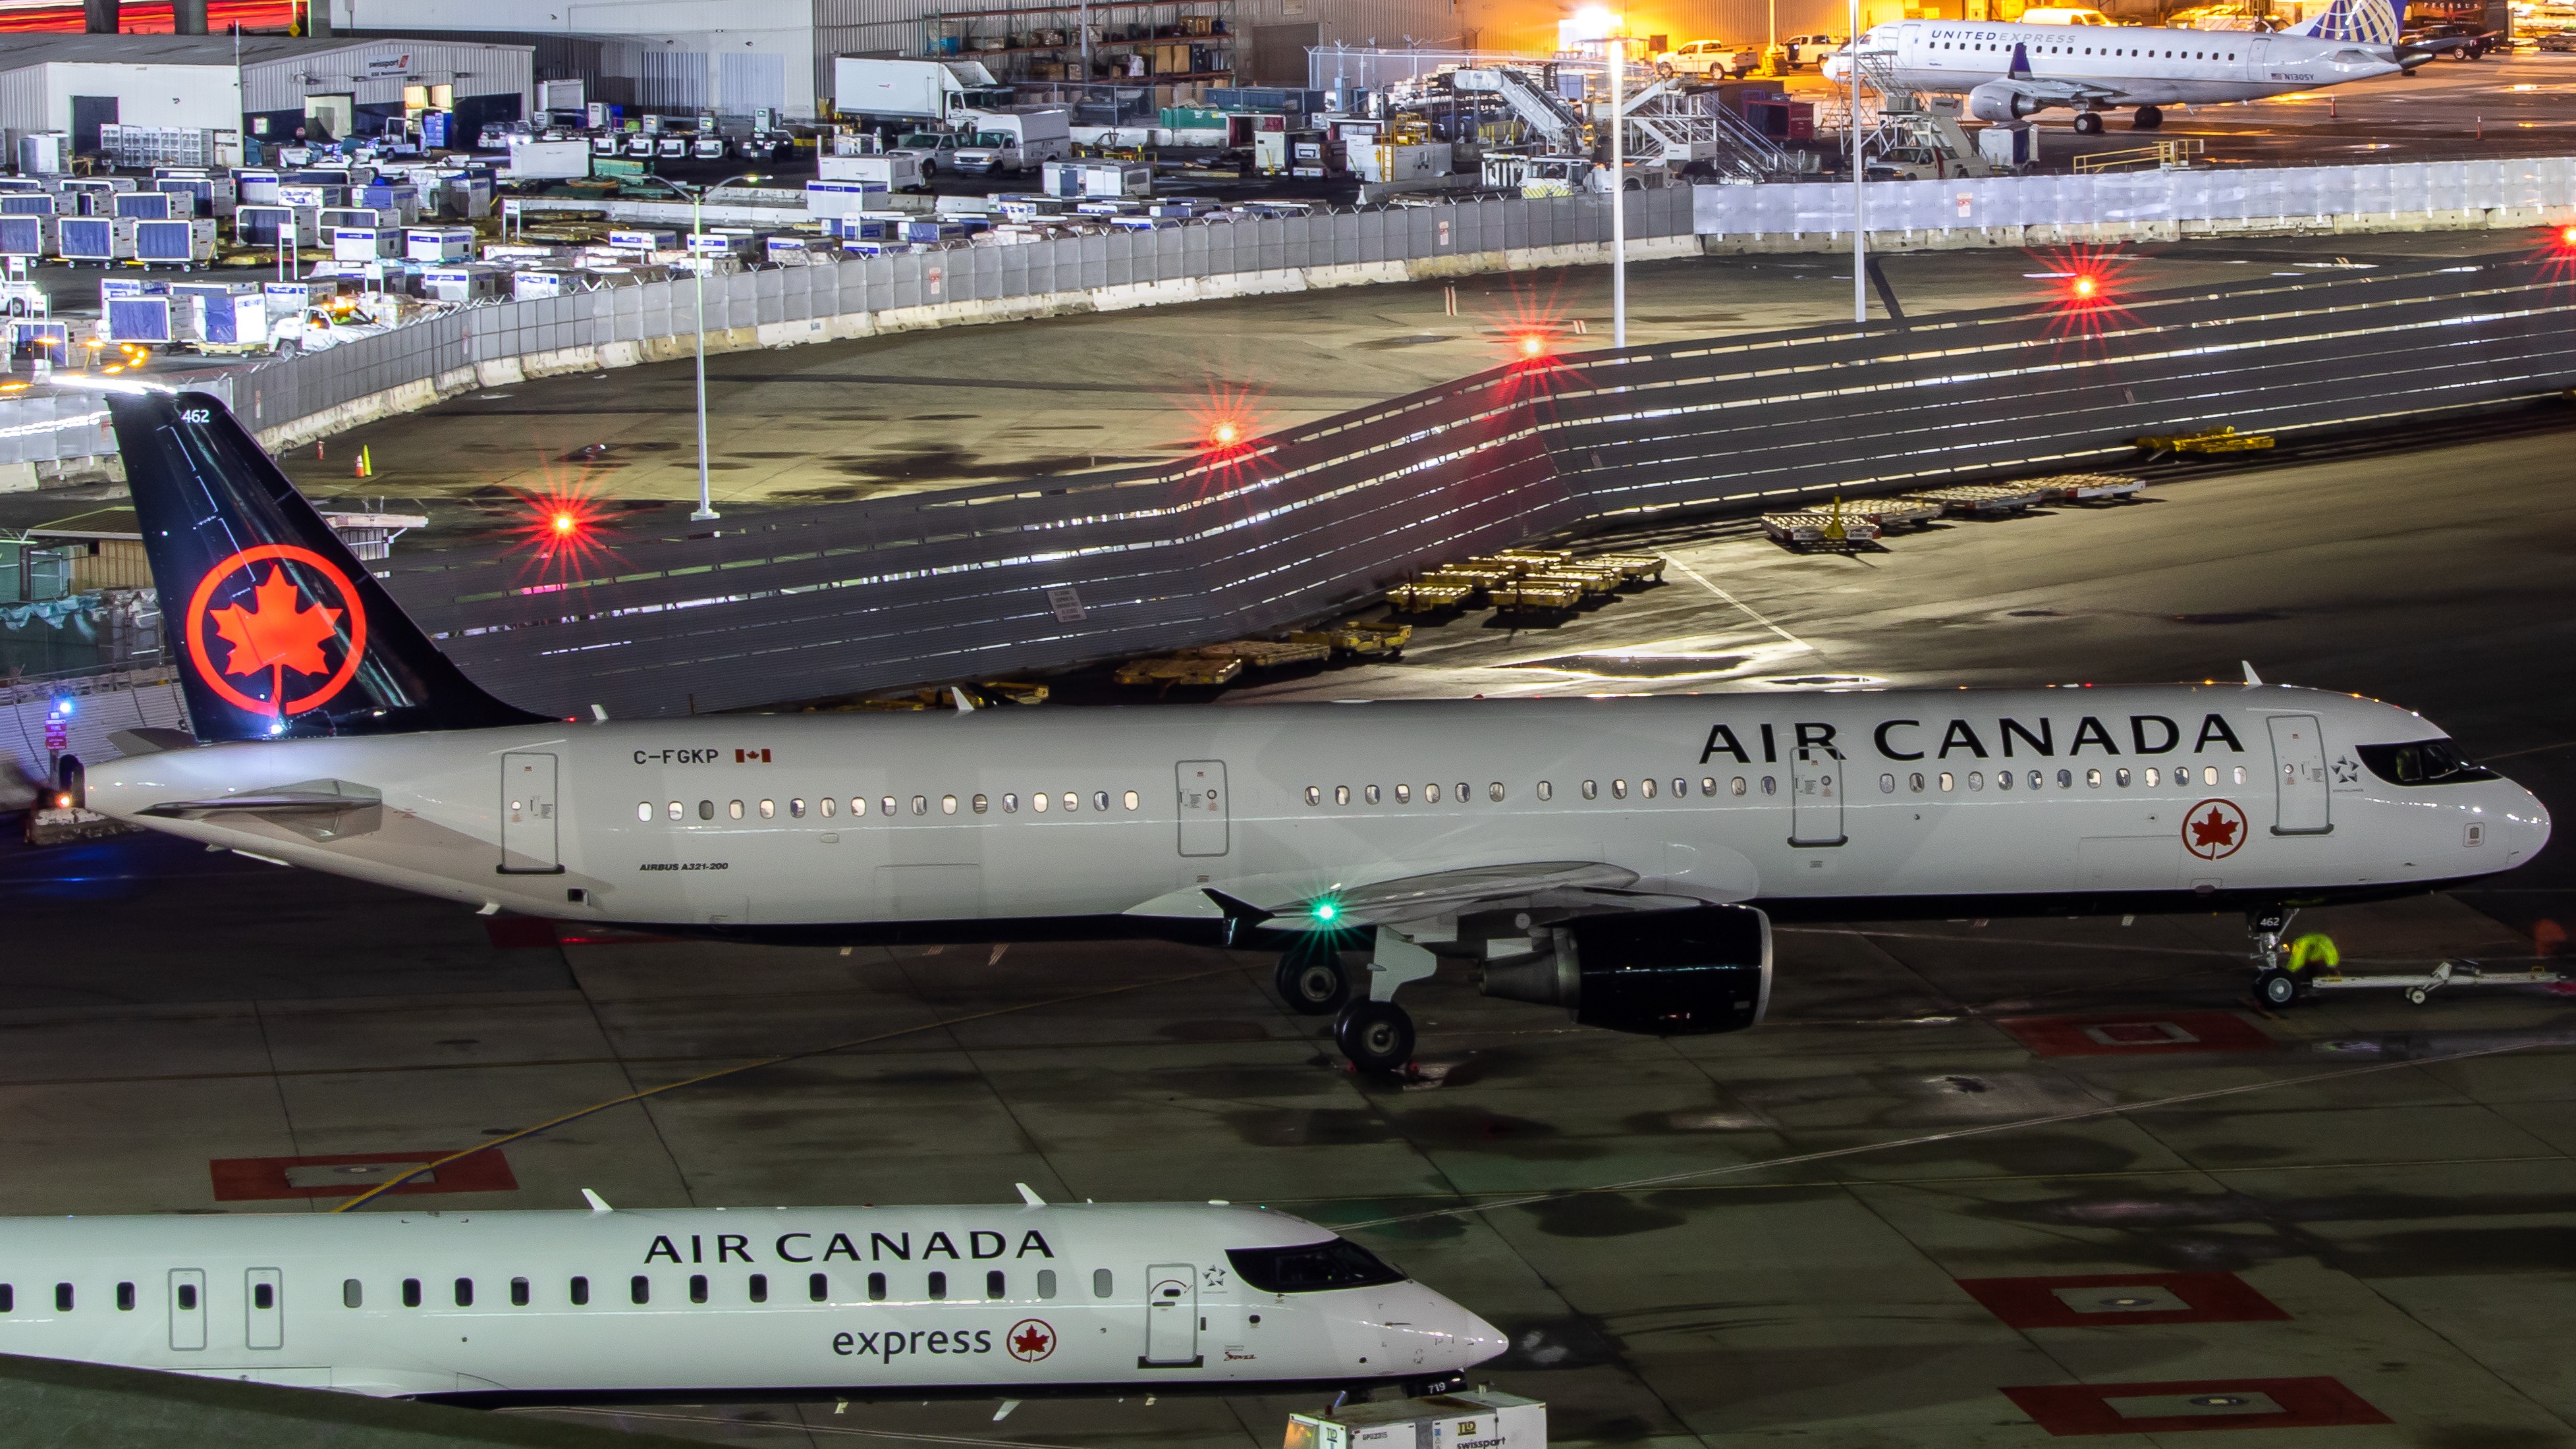 Photo of C-FGKP - Air Canada Airbus A321-200